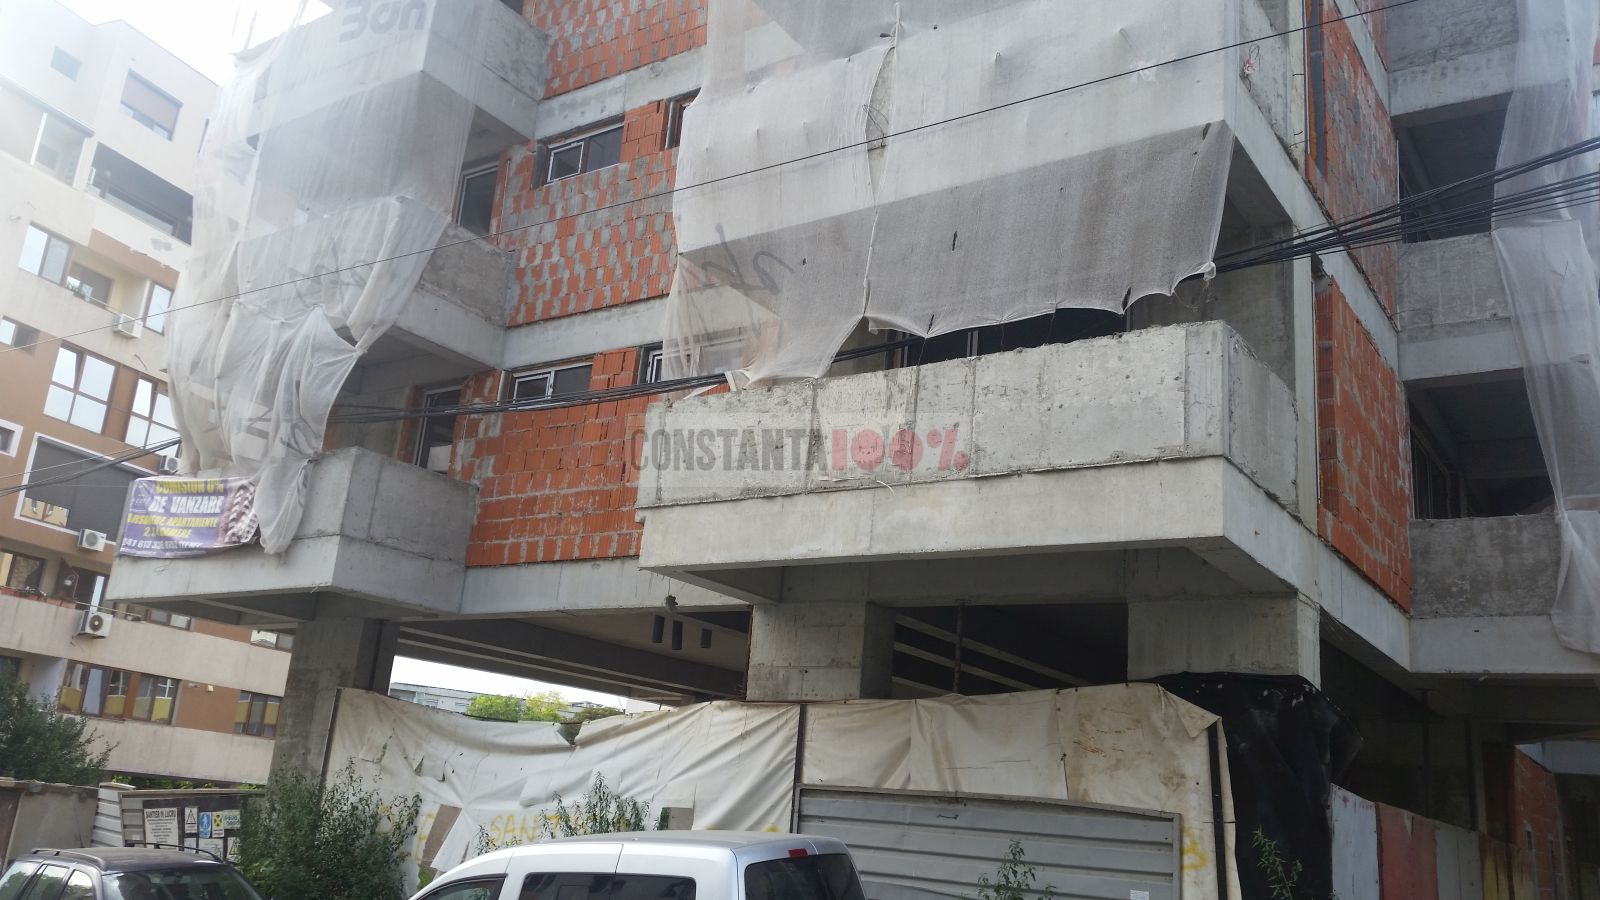 Cât costă un apartament în blocul de pe strada Cașin, care i-a scos pe vecini în stradă